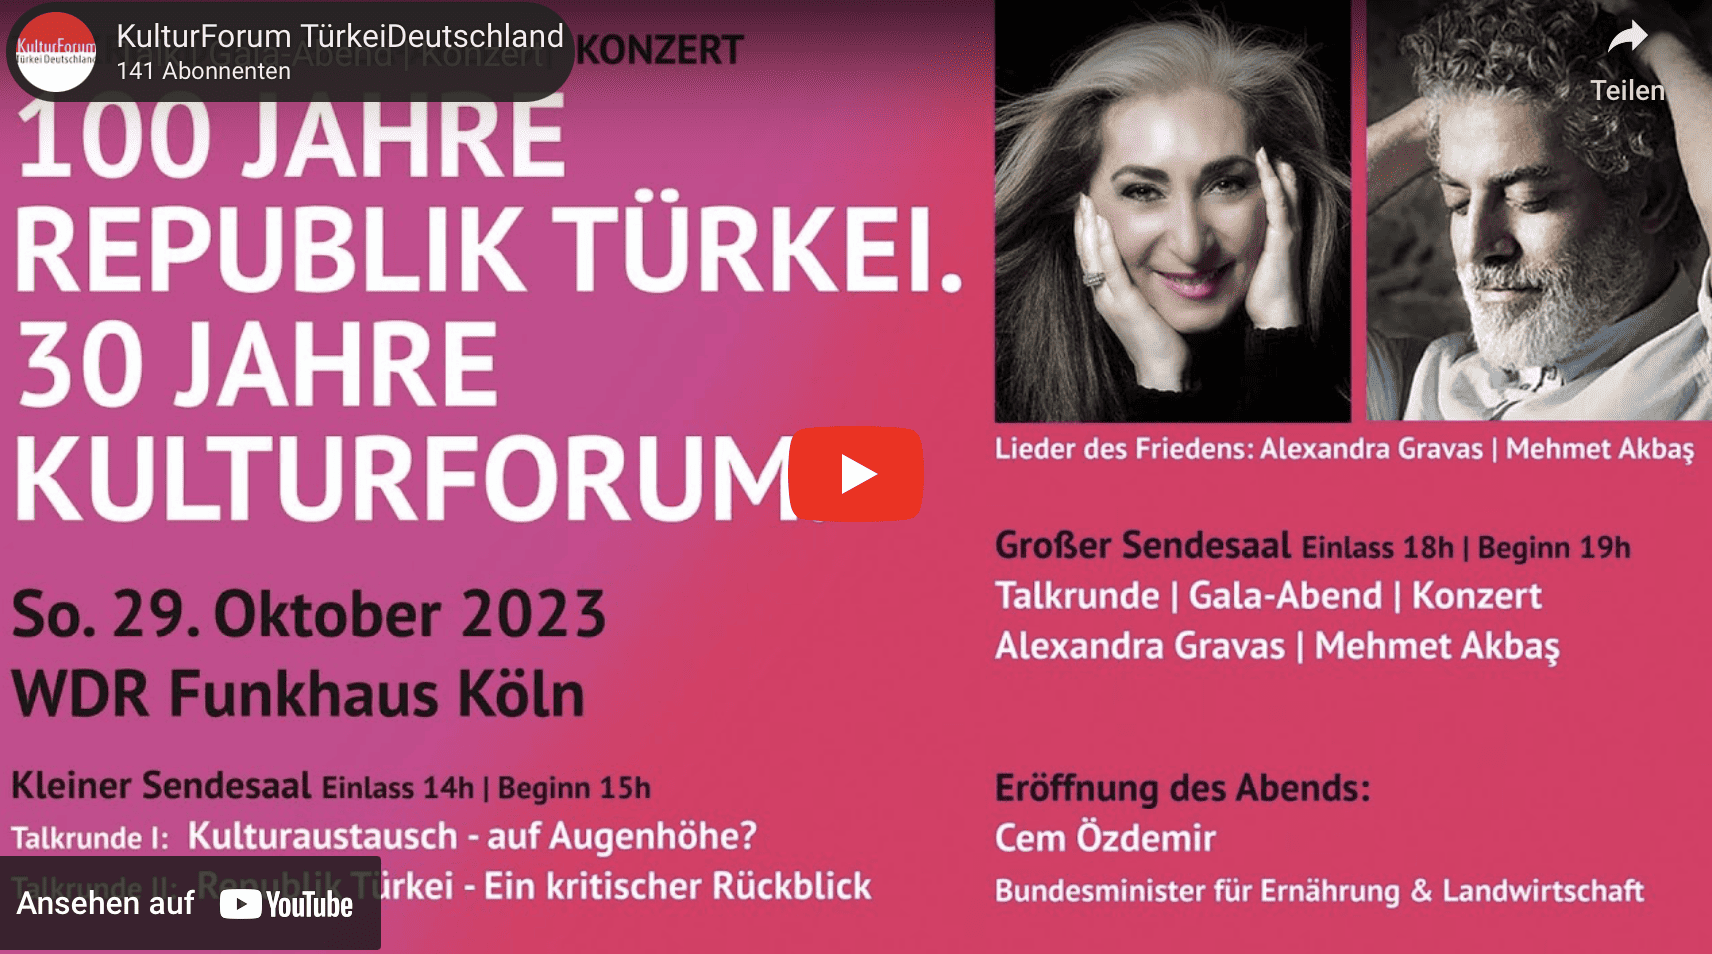 Livestream zum Event 30 Jahre KulturForum